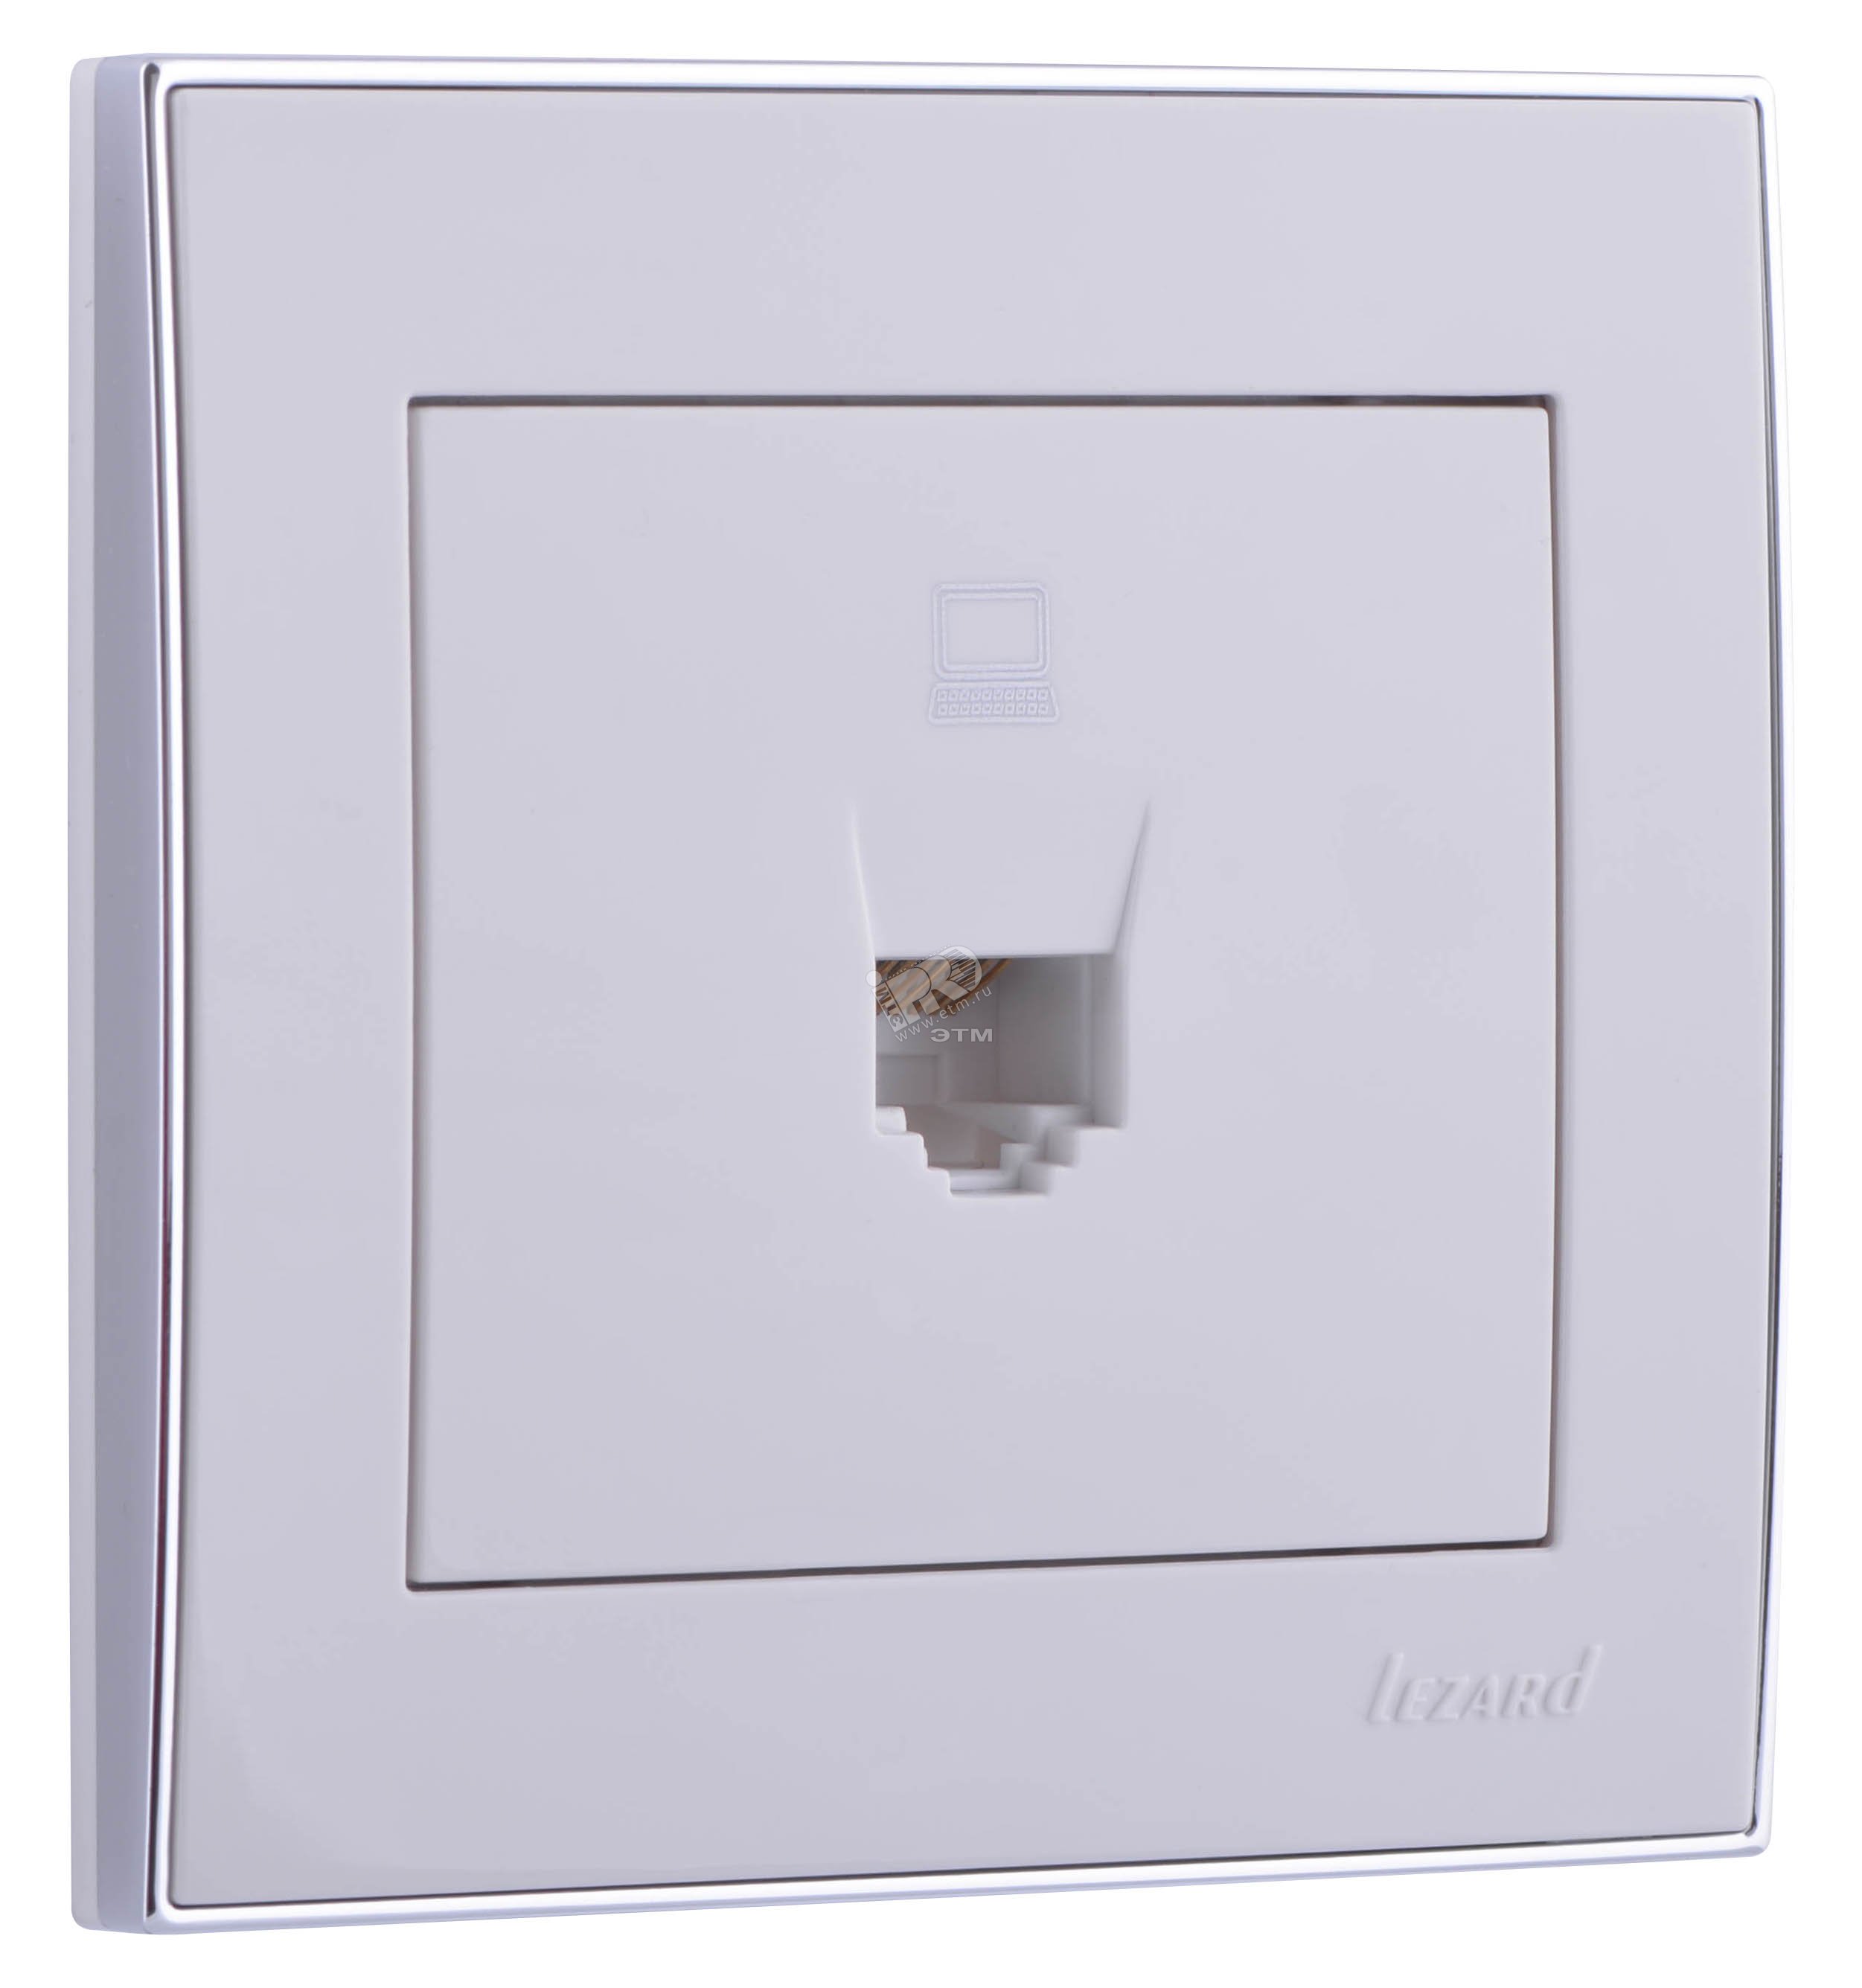 RAIN Розетка компьютерная белая с боковой вставкой хром 703-0225-139 Lezard